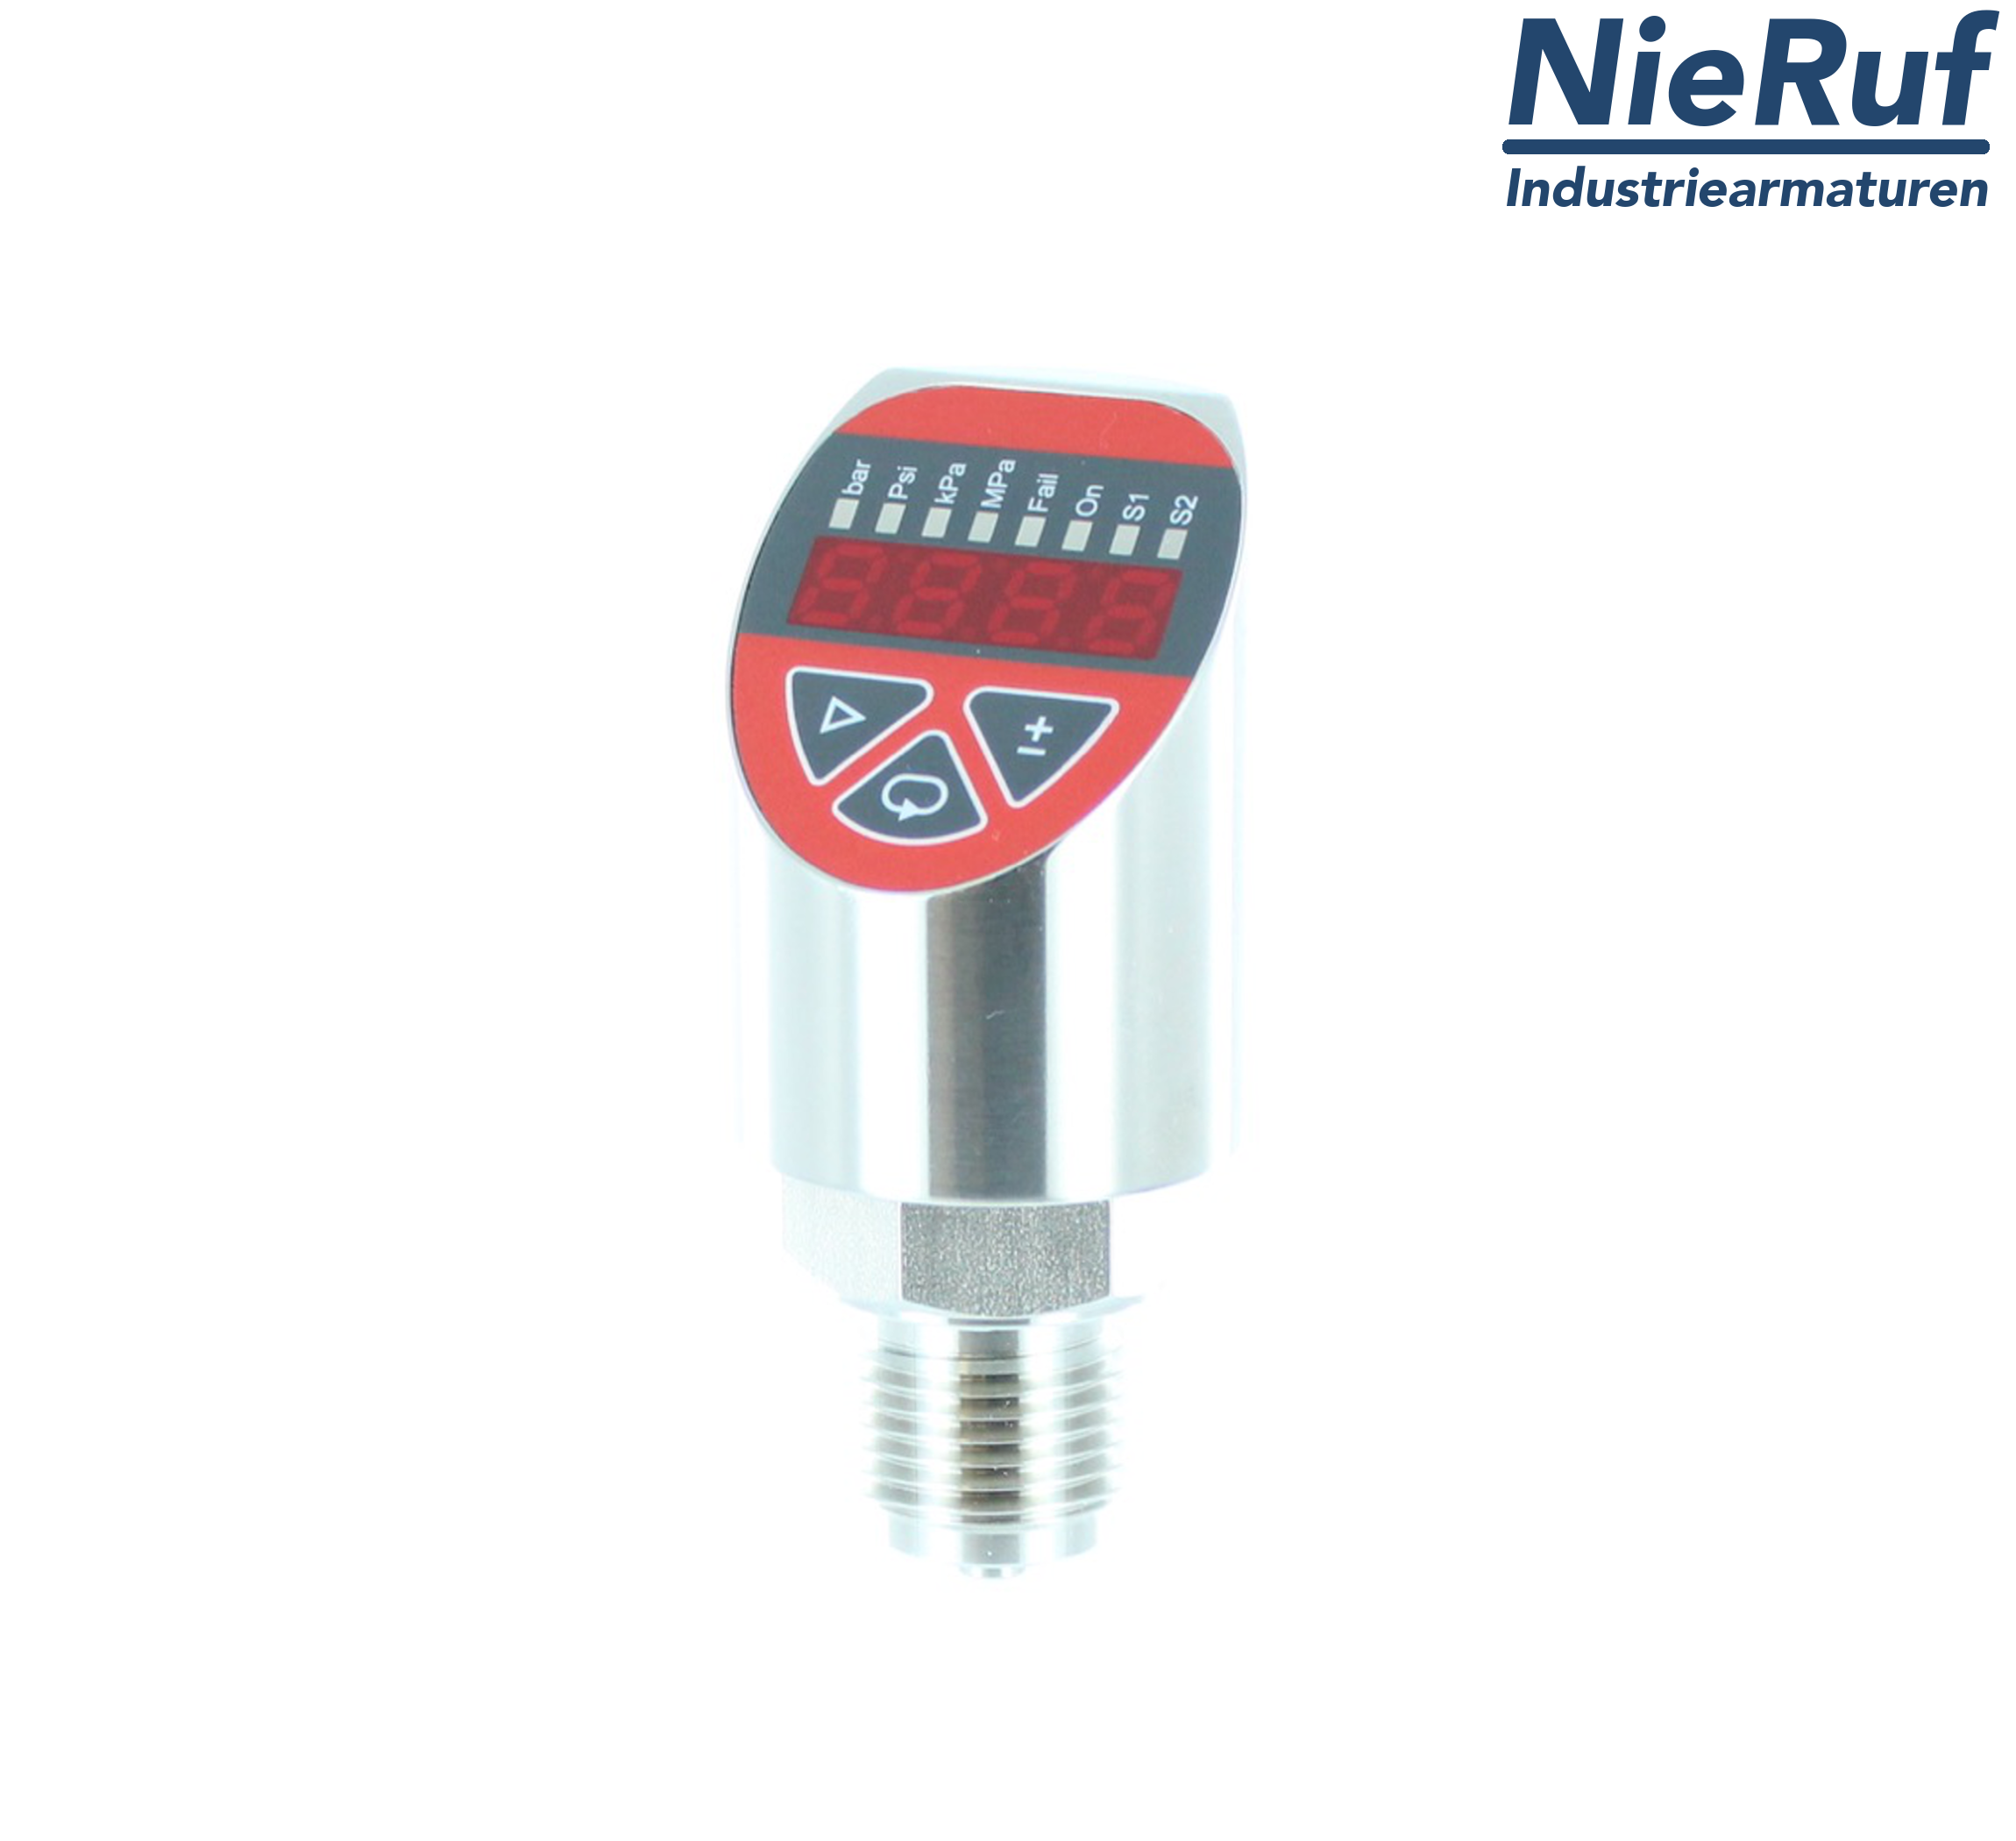 digital pressure sensor G 1/2" B 4-wire: 1xPNP, 1x4 - 20mA, Desina FPM 0,0 - 6,0 bar